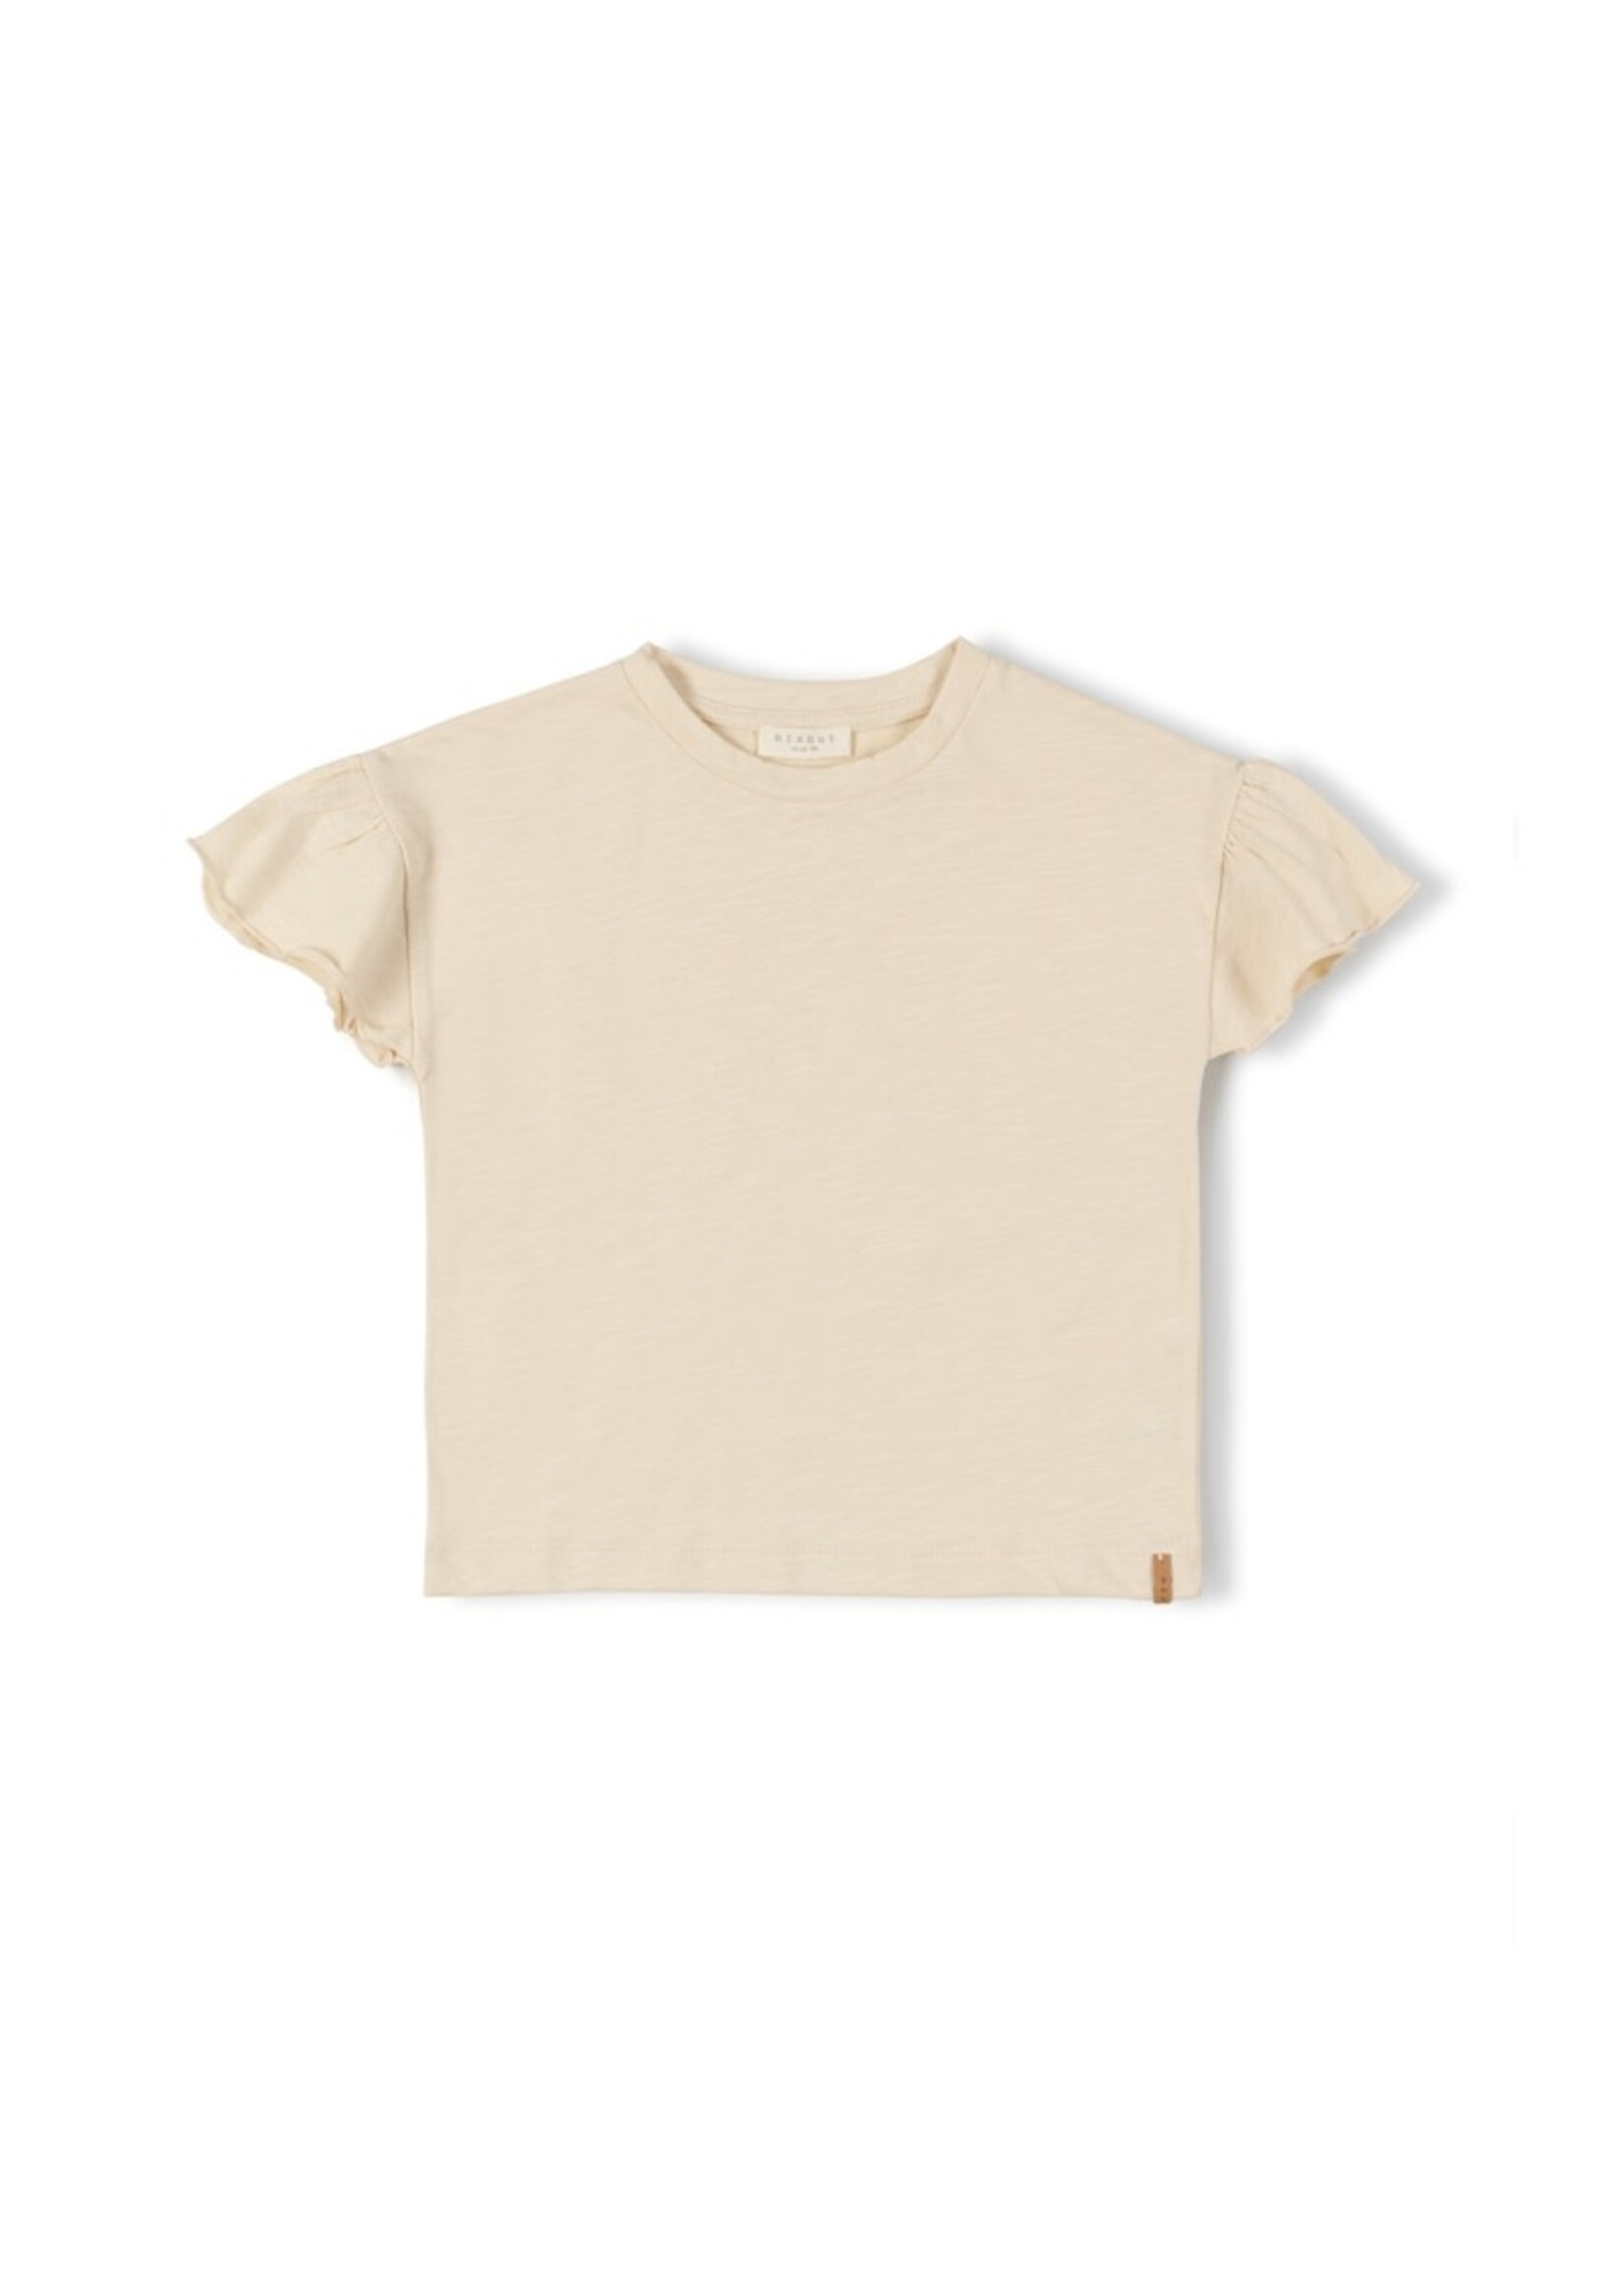 Nixnut Nixnut / Fly T-shirt / Pearl